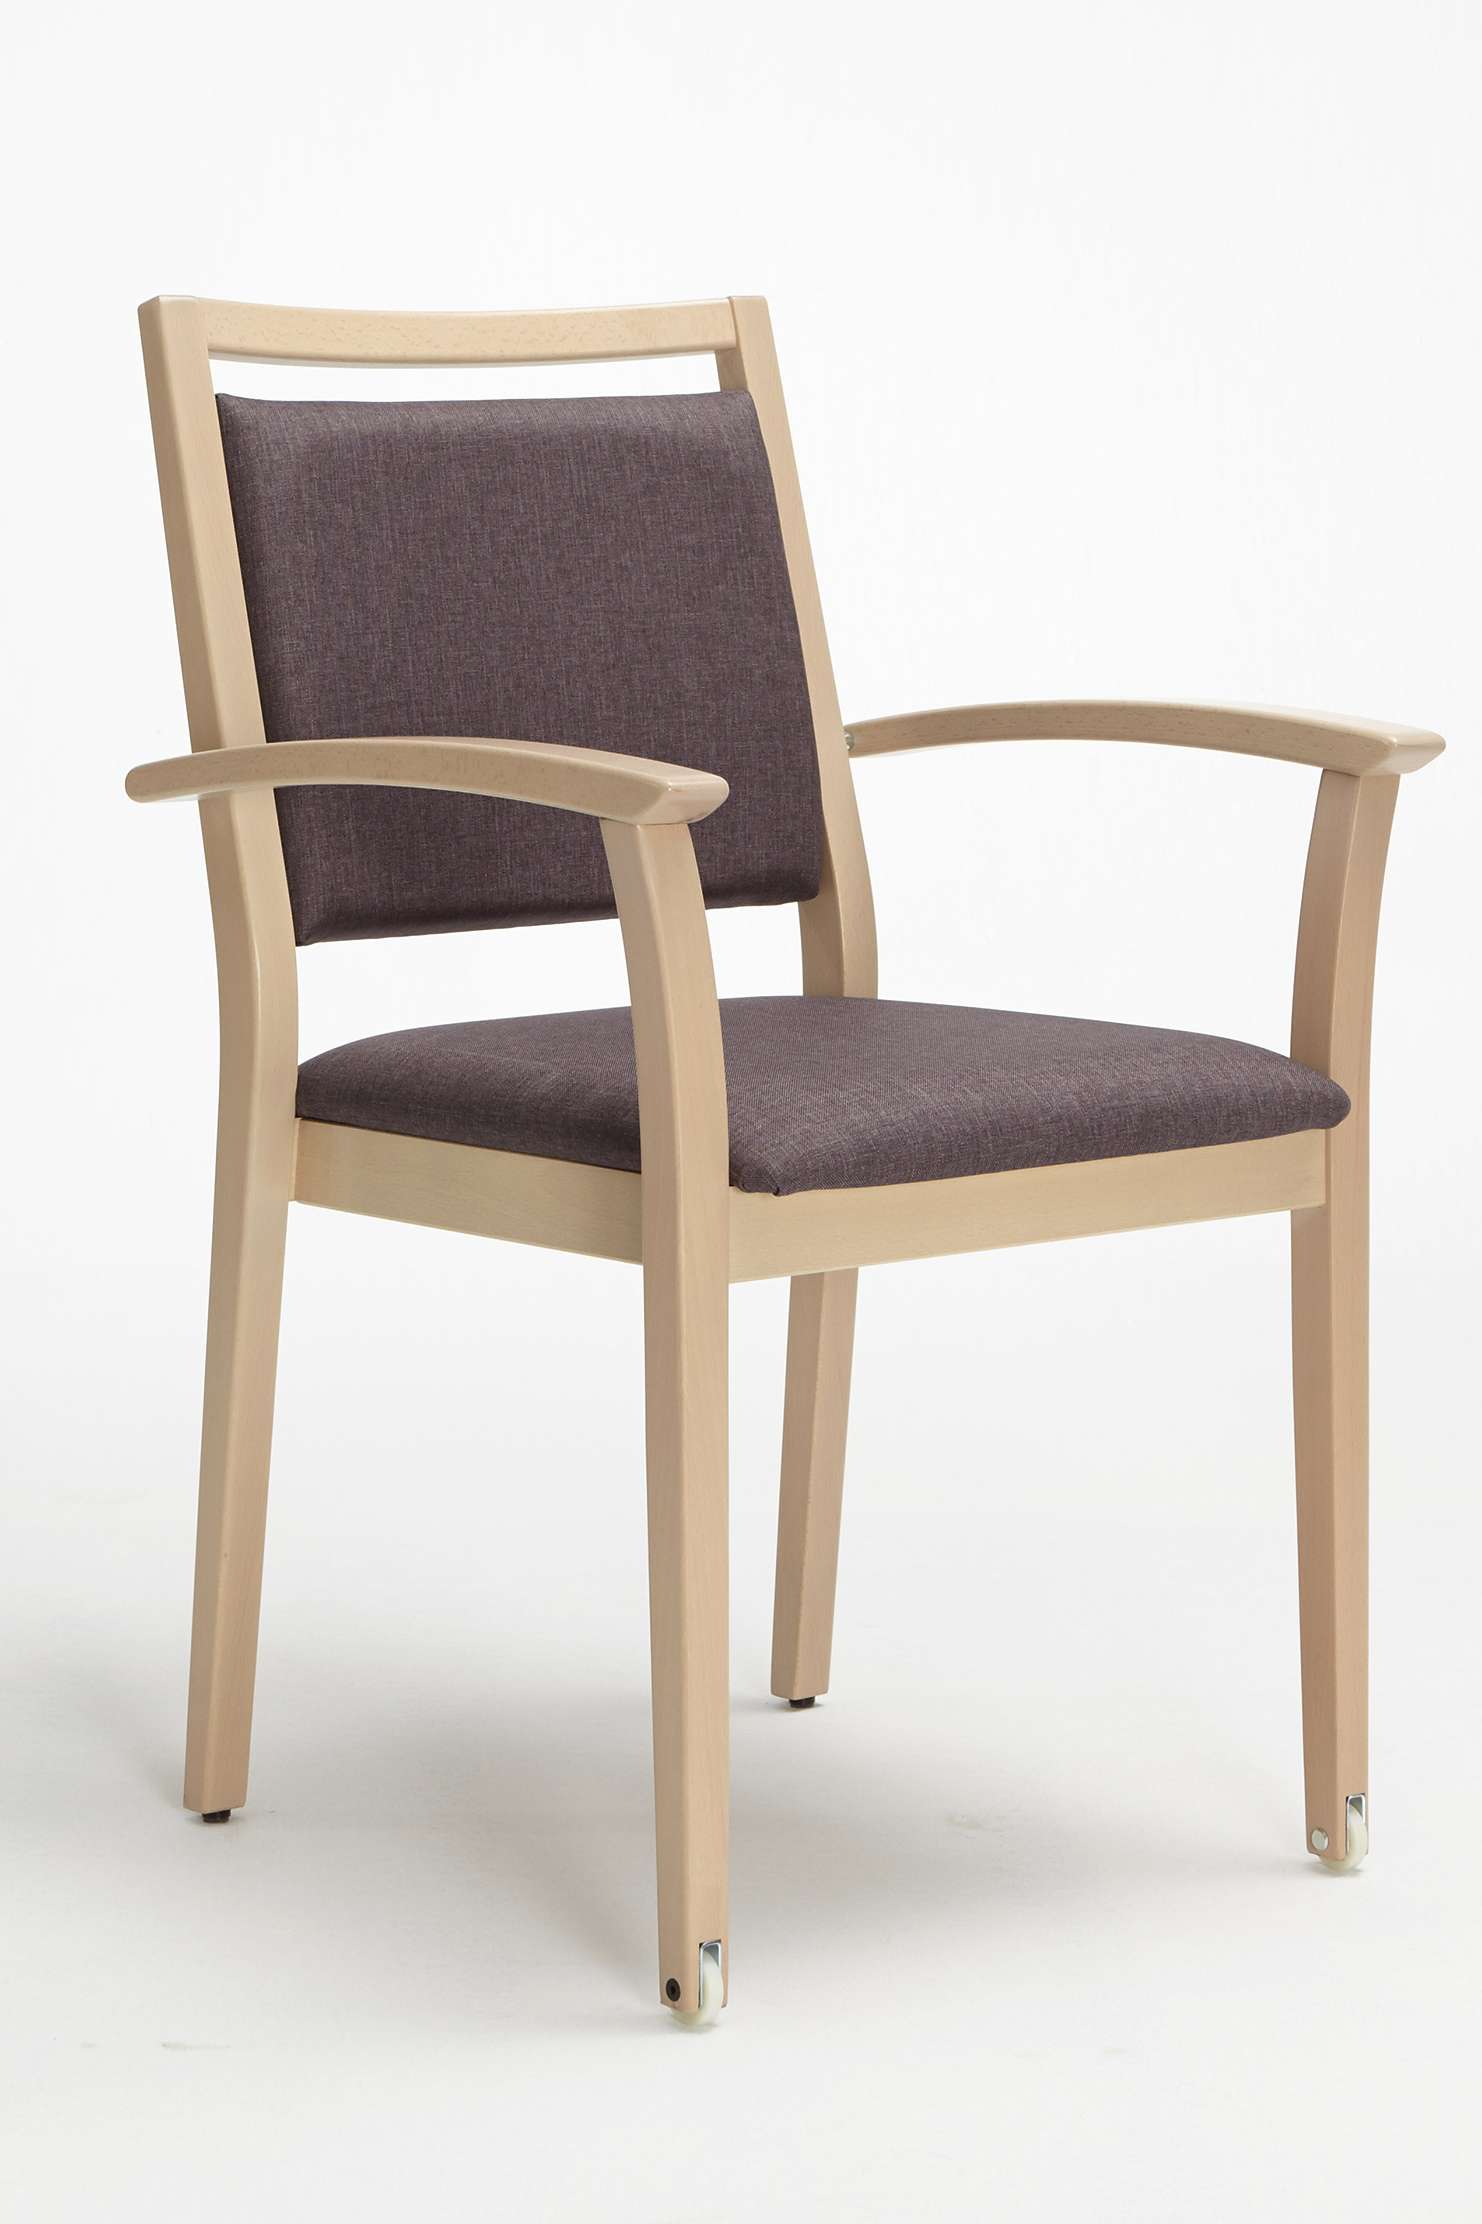 Mavo-tuoli päällekkäin pinottavana käsinojallisena mallina